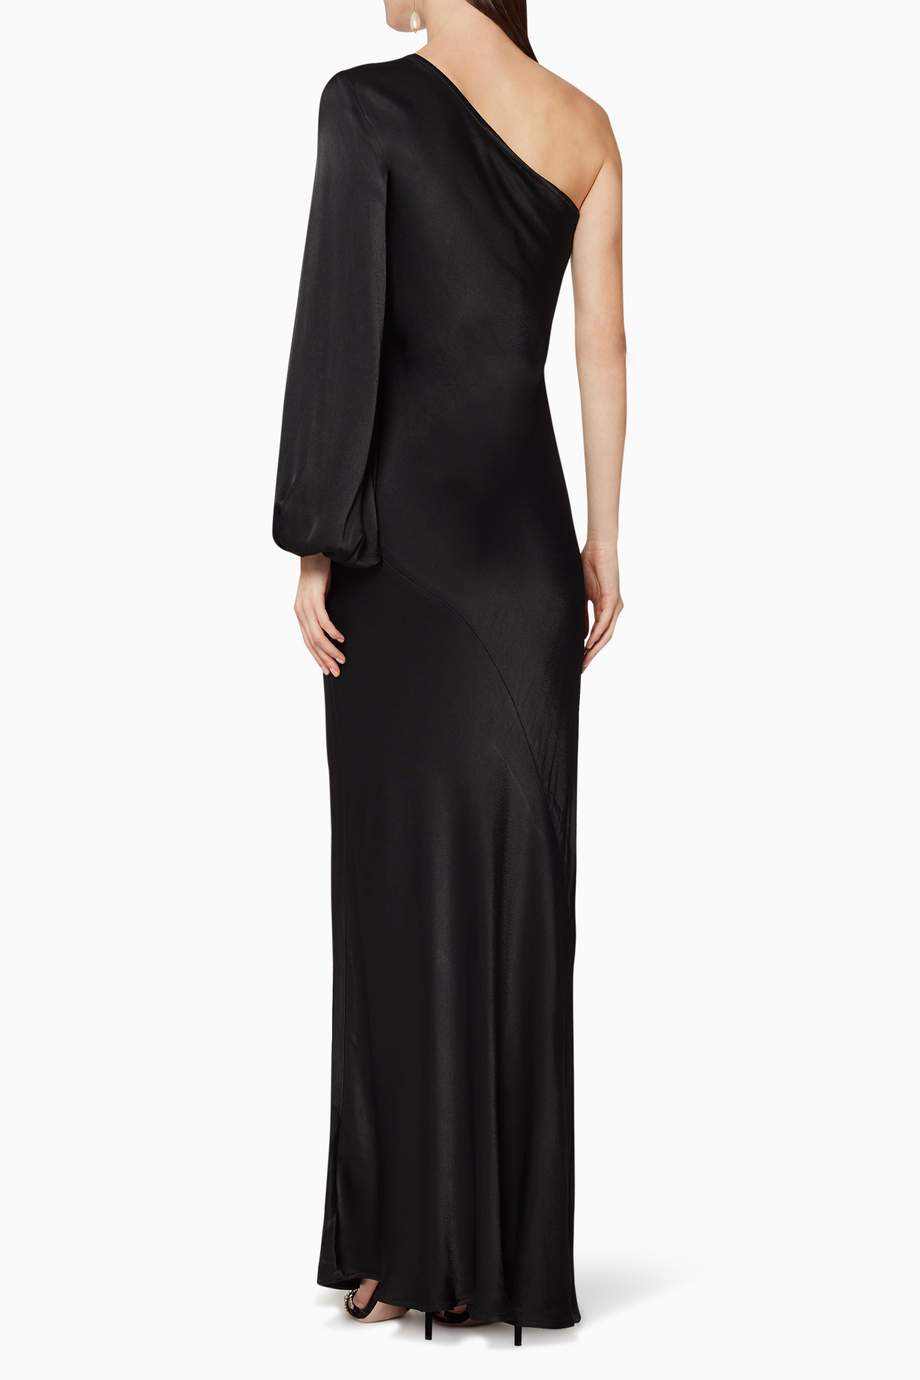 Shop Wynn Hamlyn Black One-Shoulder Crepe Satin Dress for Women ...